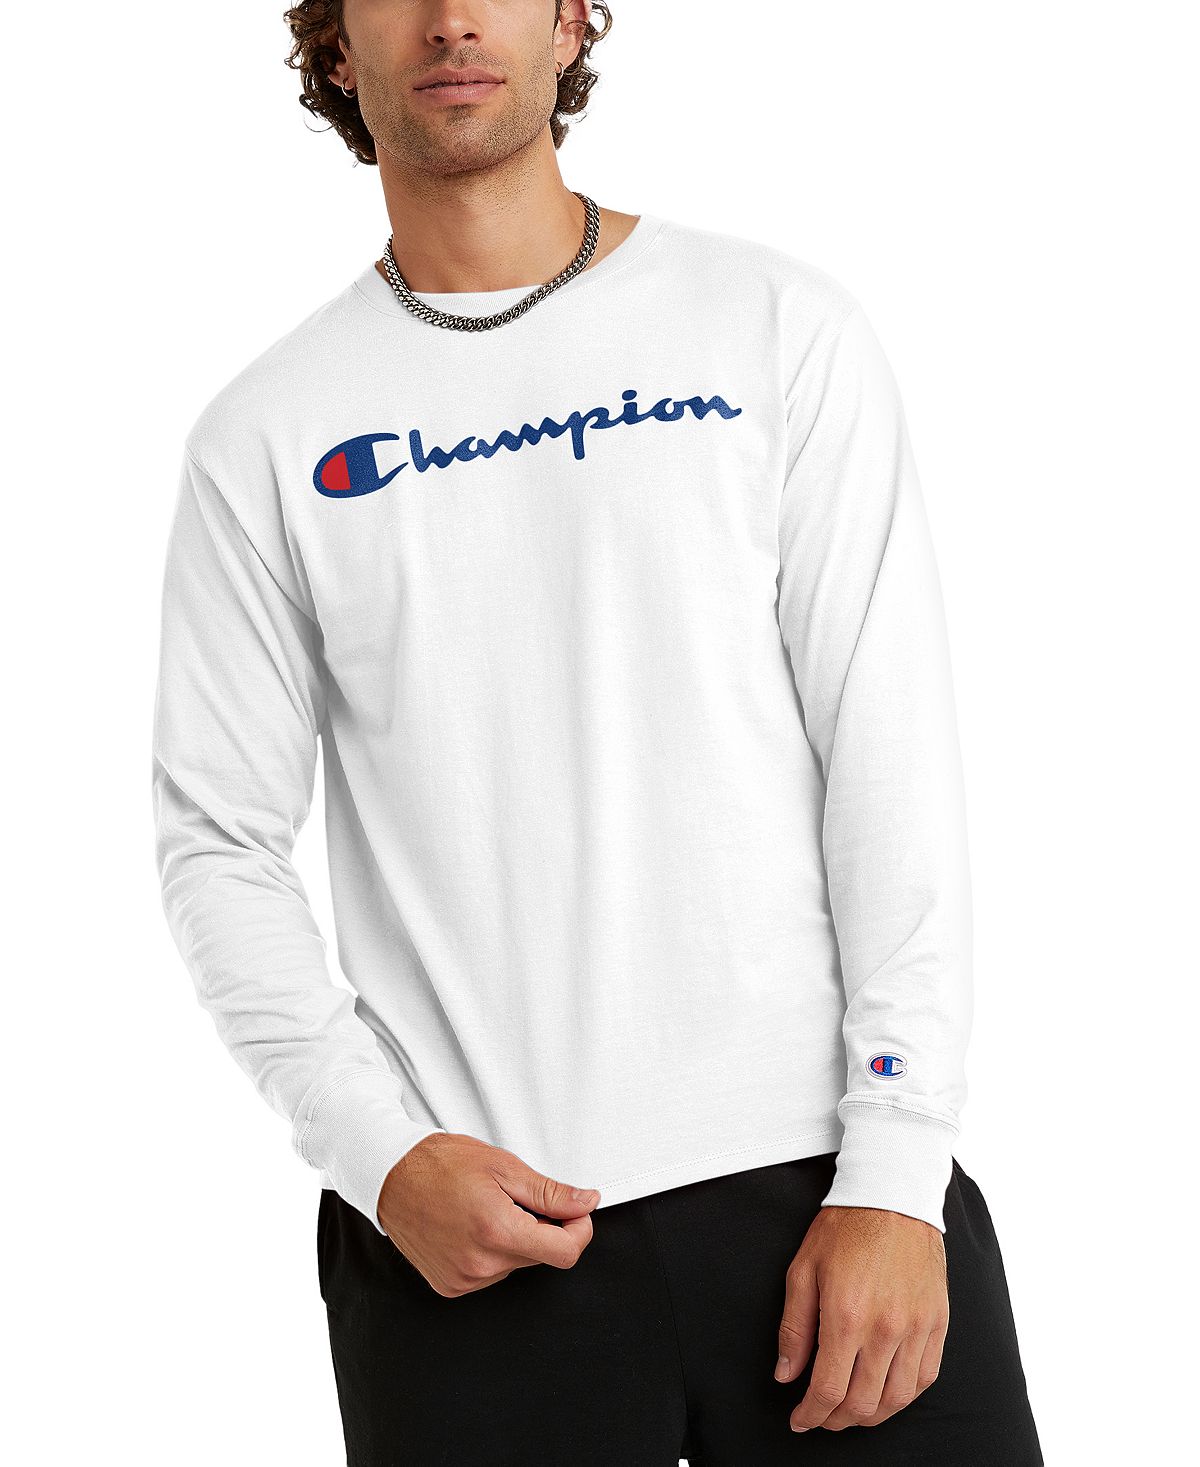 Мужская футболка с длинным рукавом и надписью-логотипом Champion